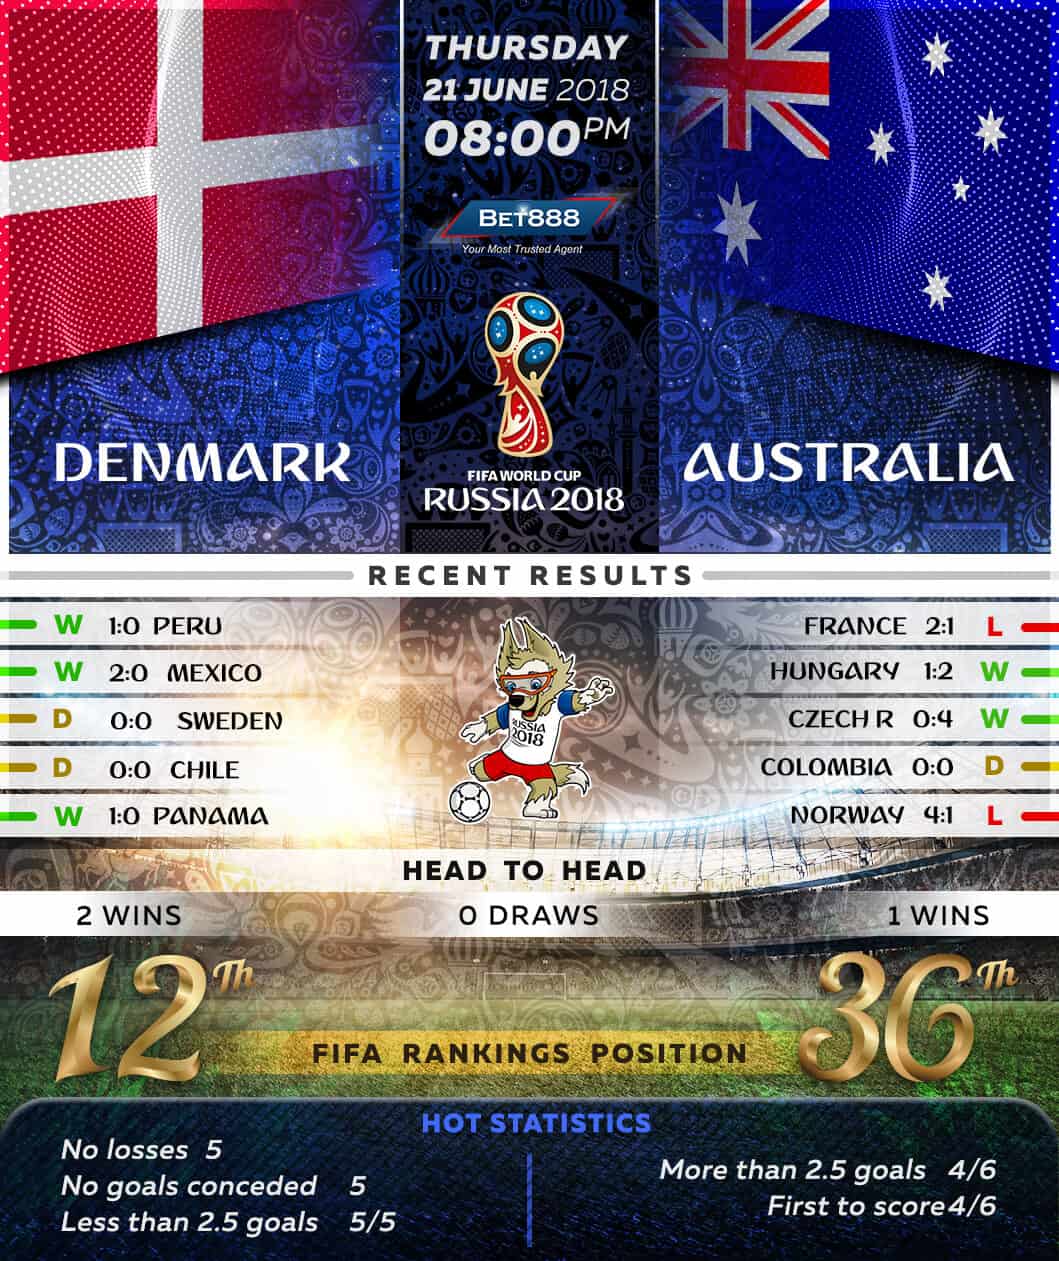 Denmark vs Australia 21/06/18